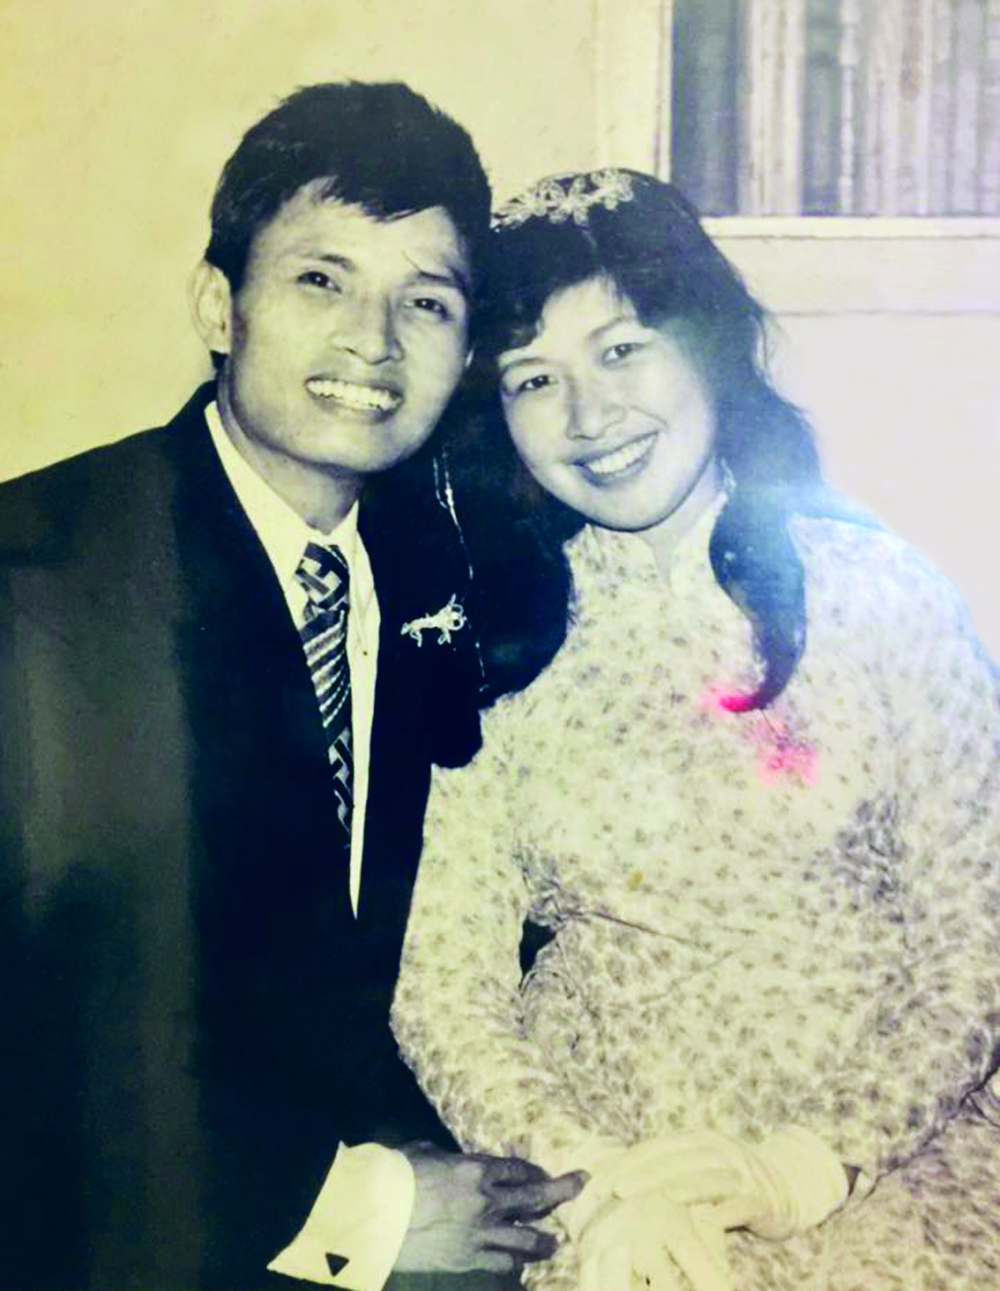 Cô dâu Mai Loan và chú rể Xuân Nhản trong ngày cưới (ảnh chụp ngày 5/4/1975)